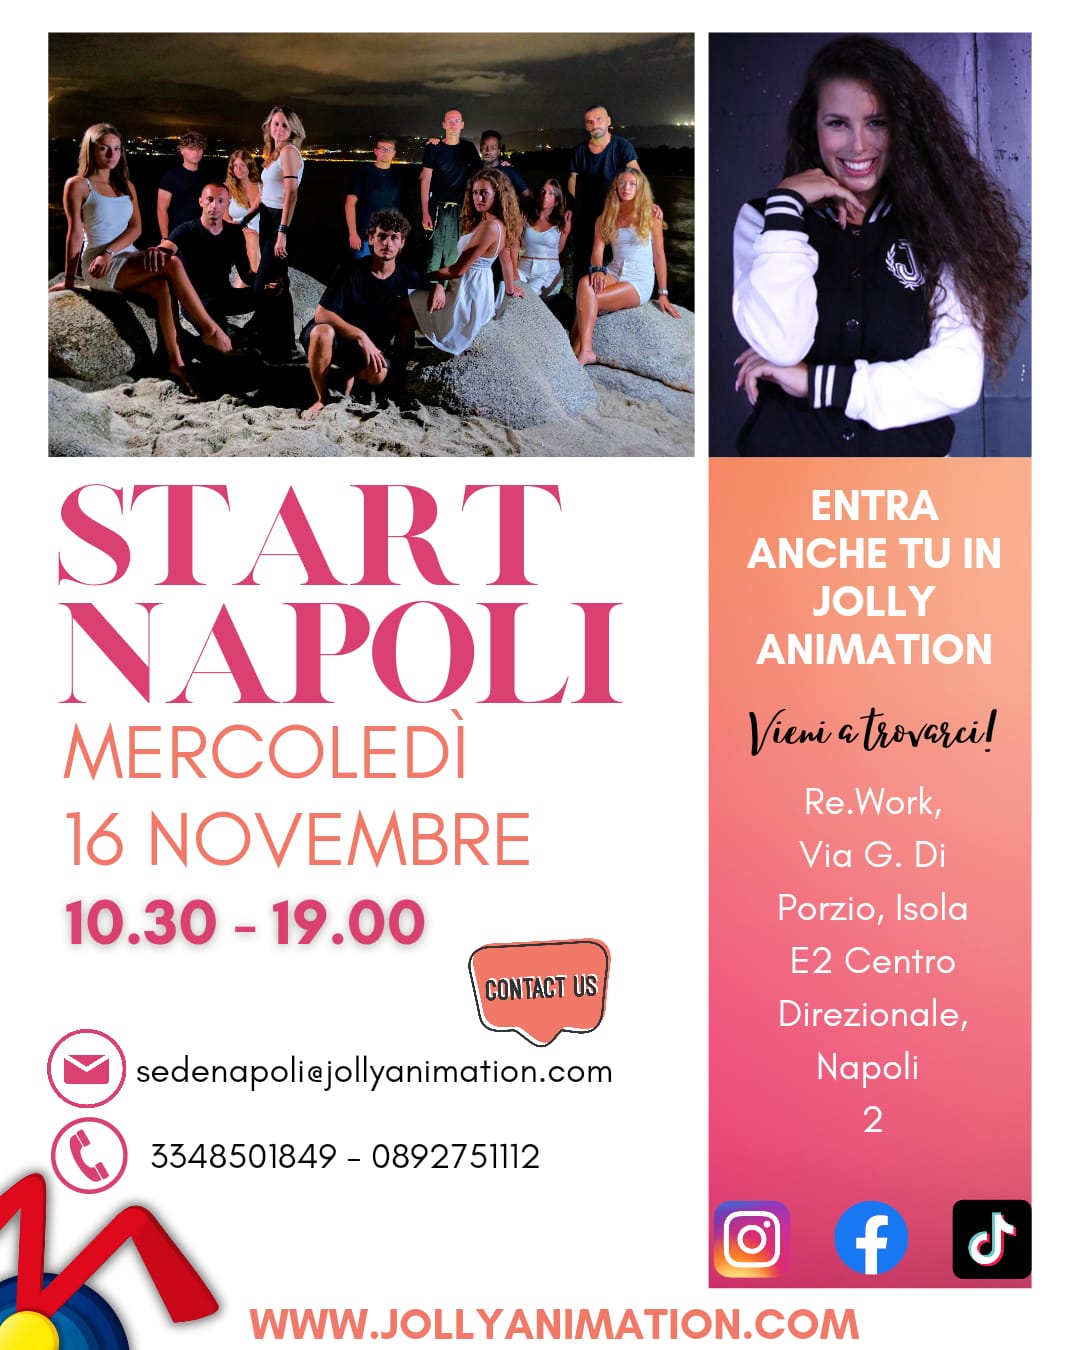 Colloqui di selezione a Napoli il 16 novembre